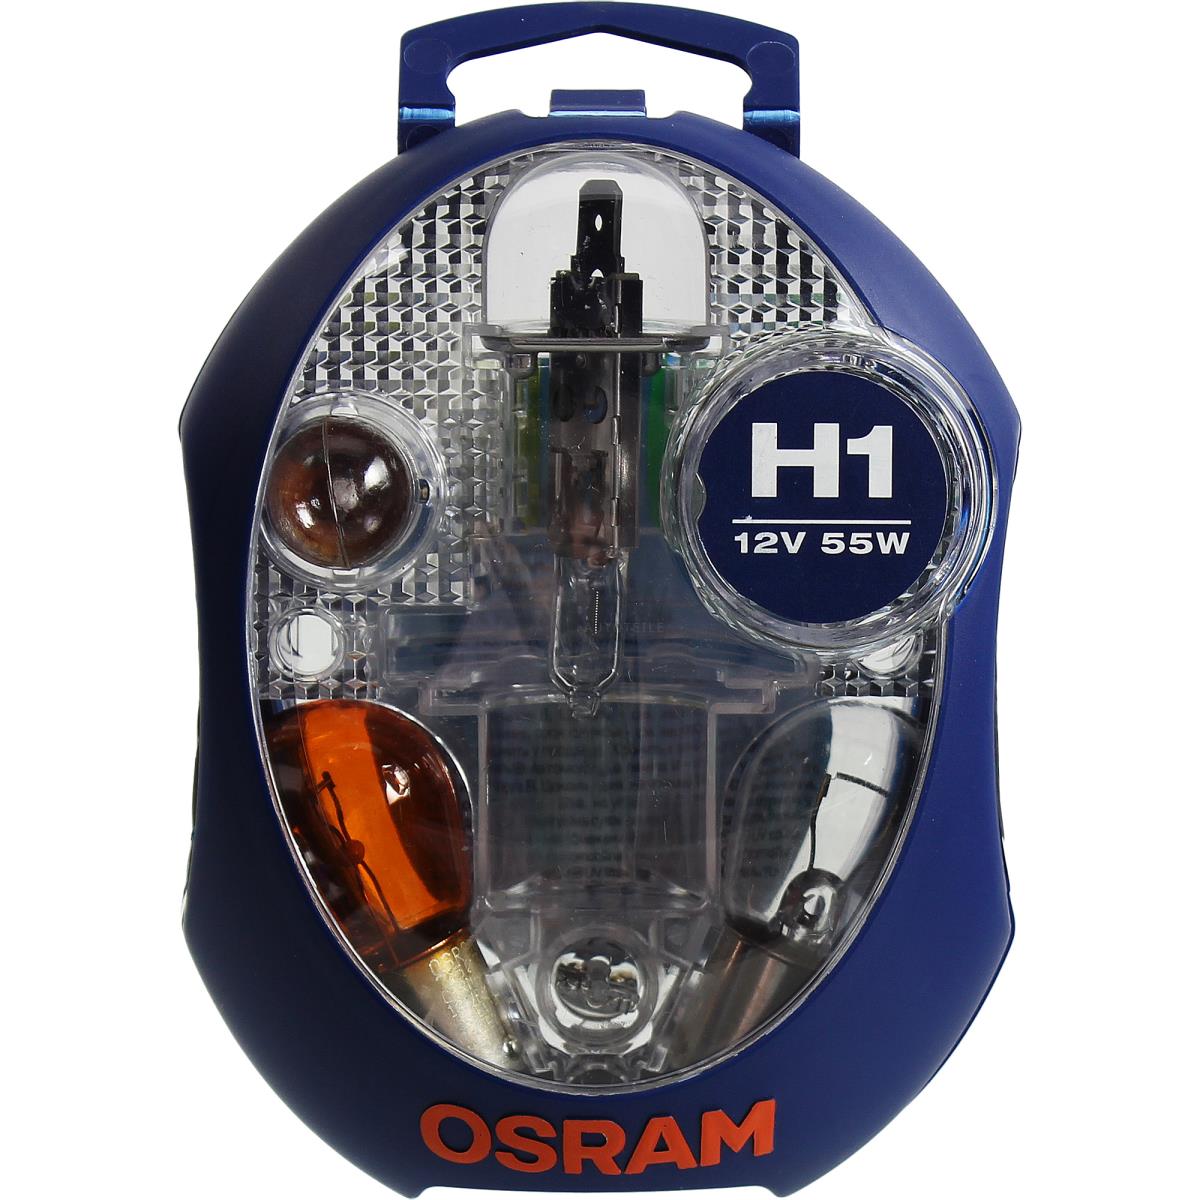 12V 55W Ersatzlampen-Box OSRAM H1+P21W+PY21W+P21/5W+R5W+W5W Birne Lampe